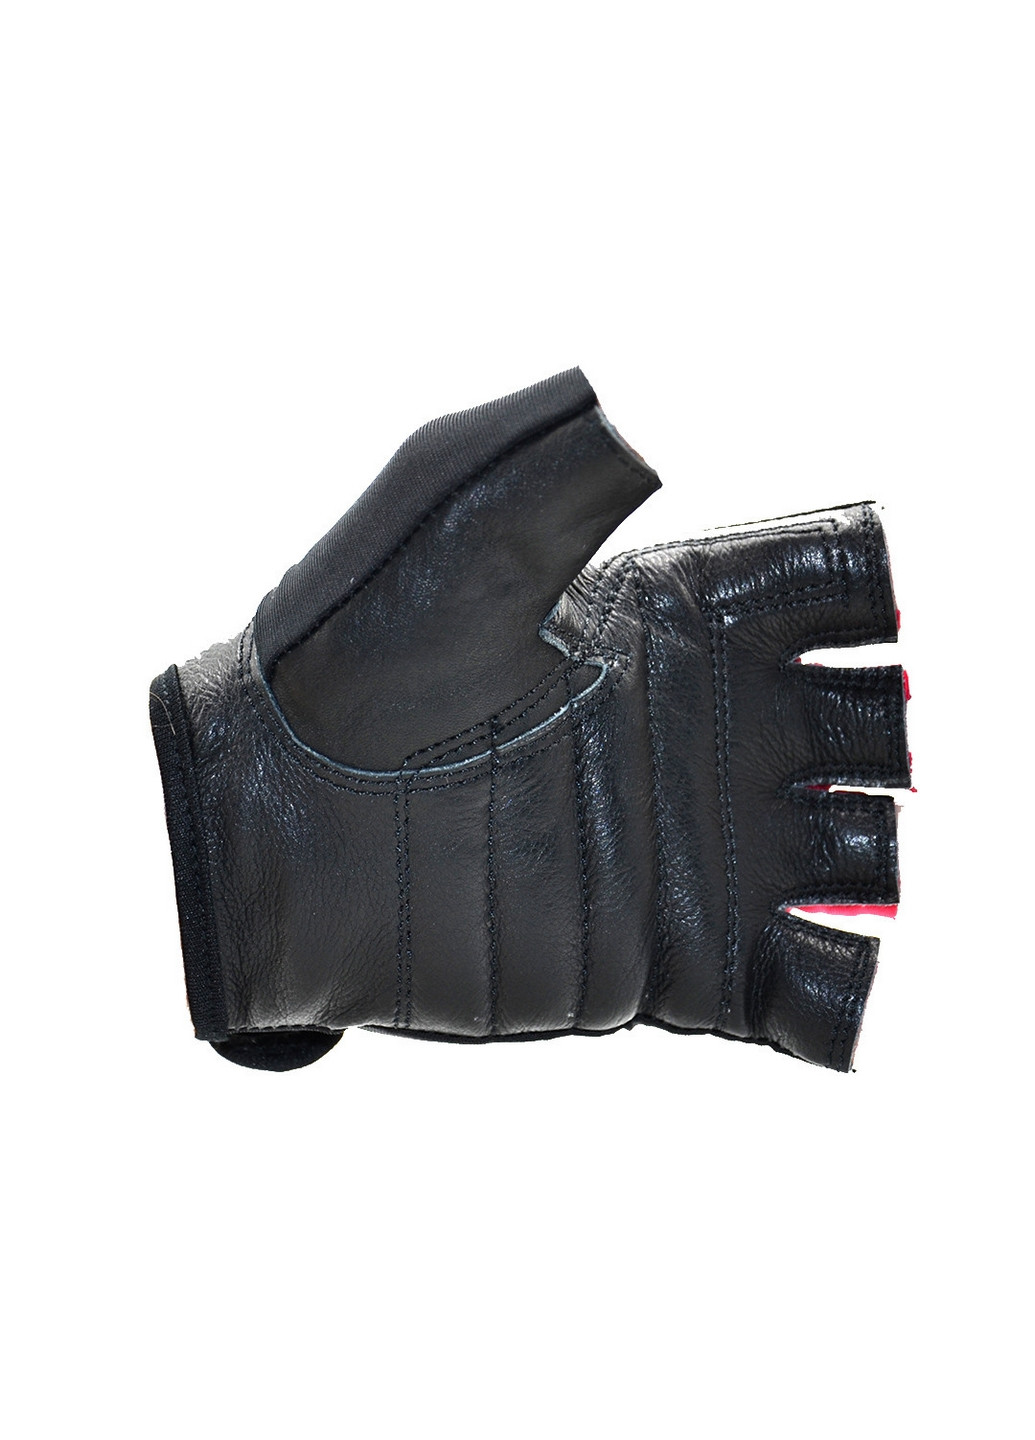 Унісекс рукавички для фітнесу L Mad Max (267658608)